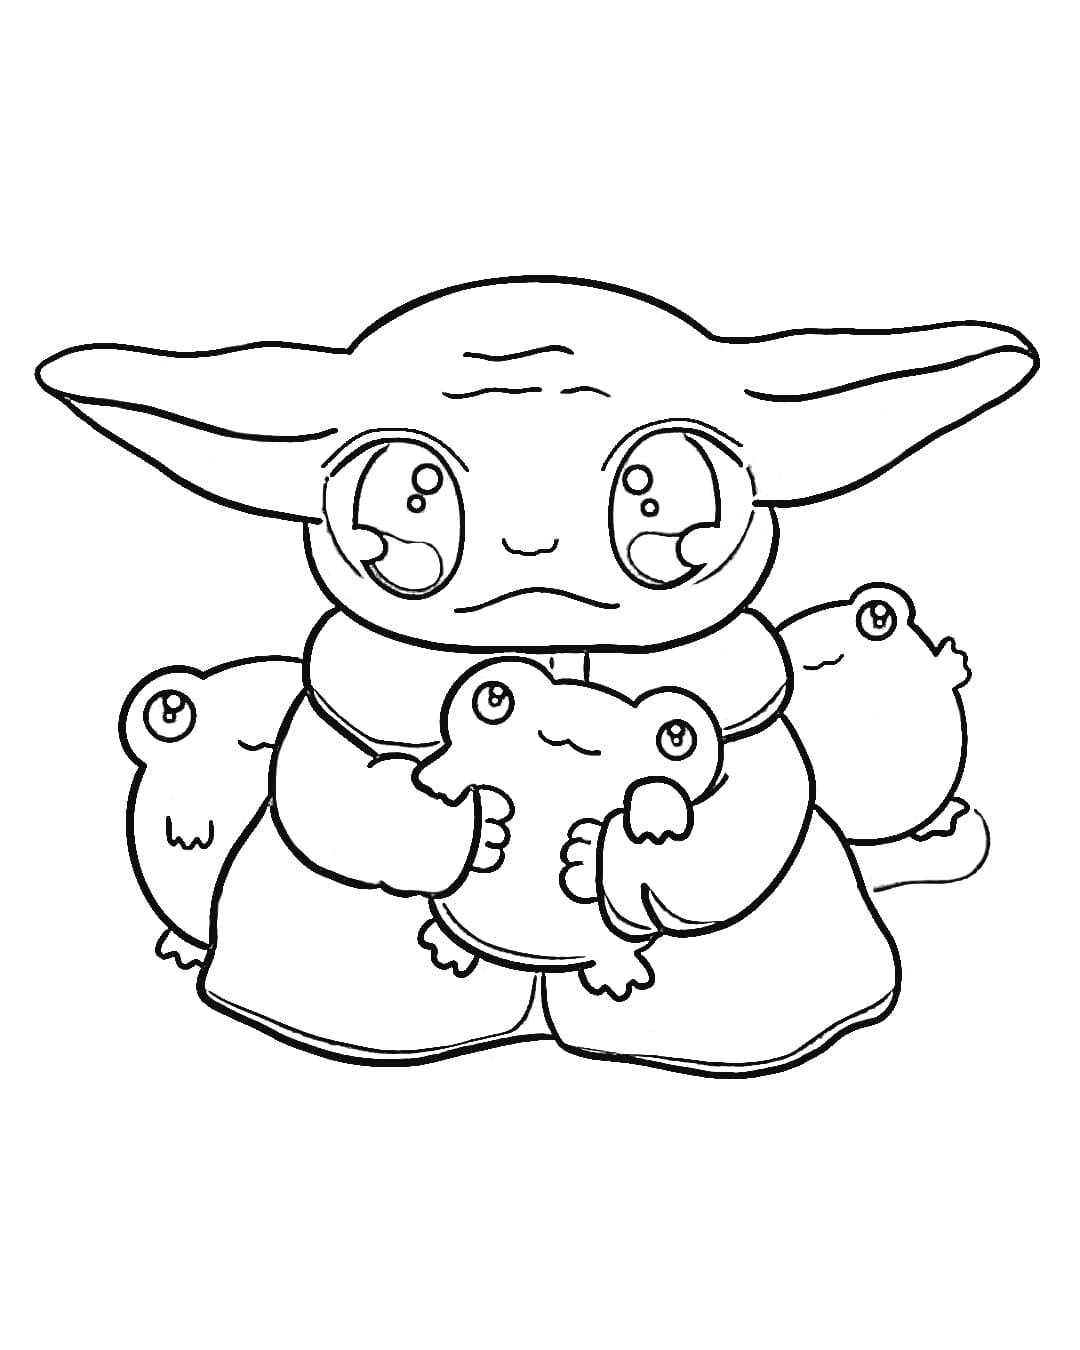 Para Colorear Baby Yoda Kawaii